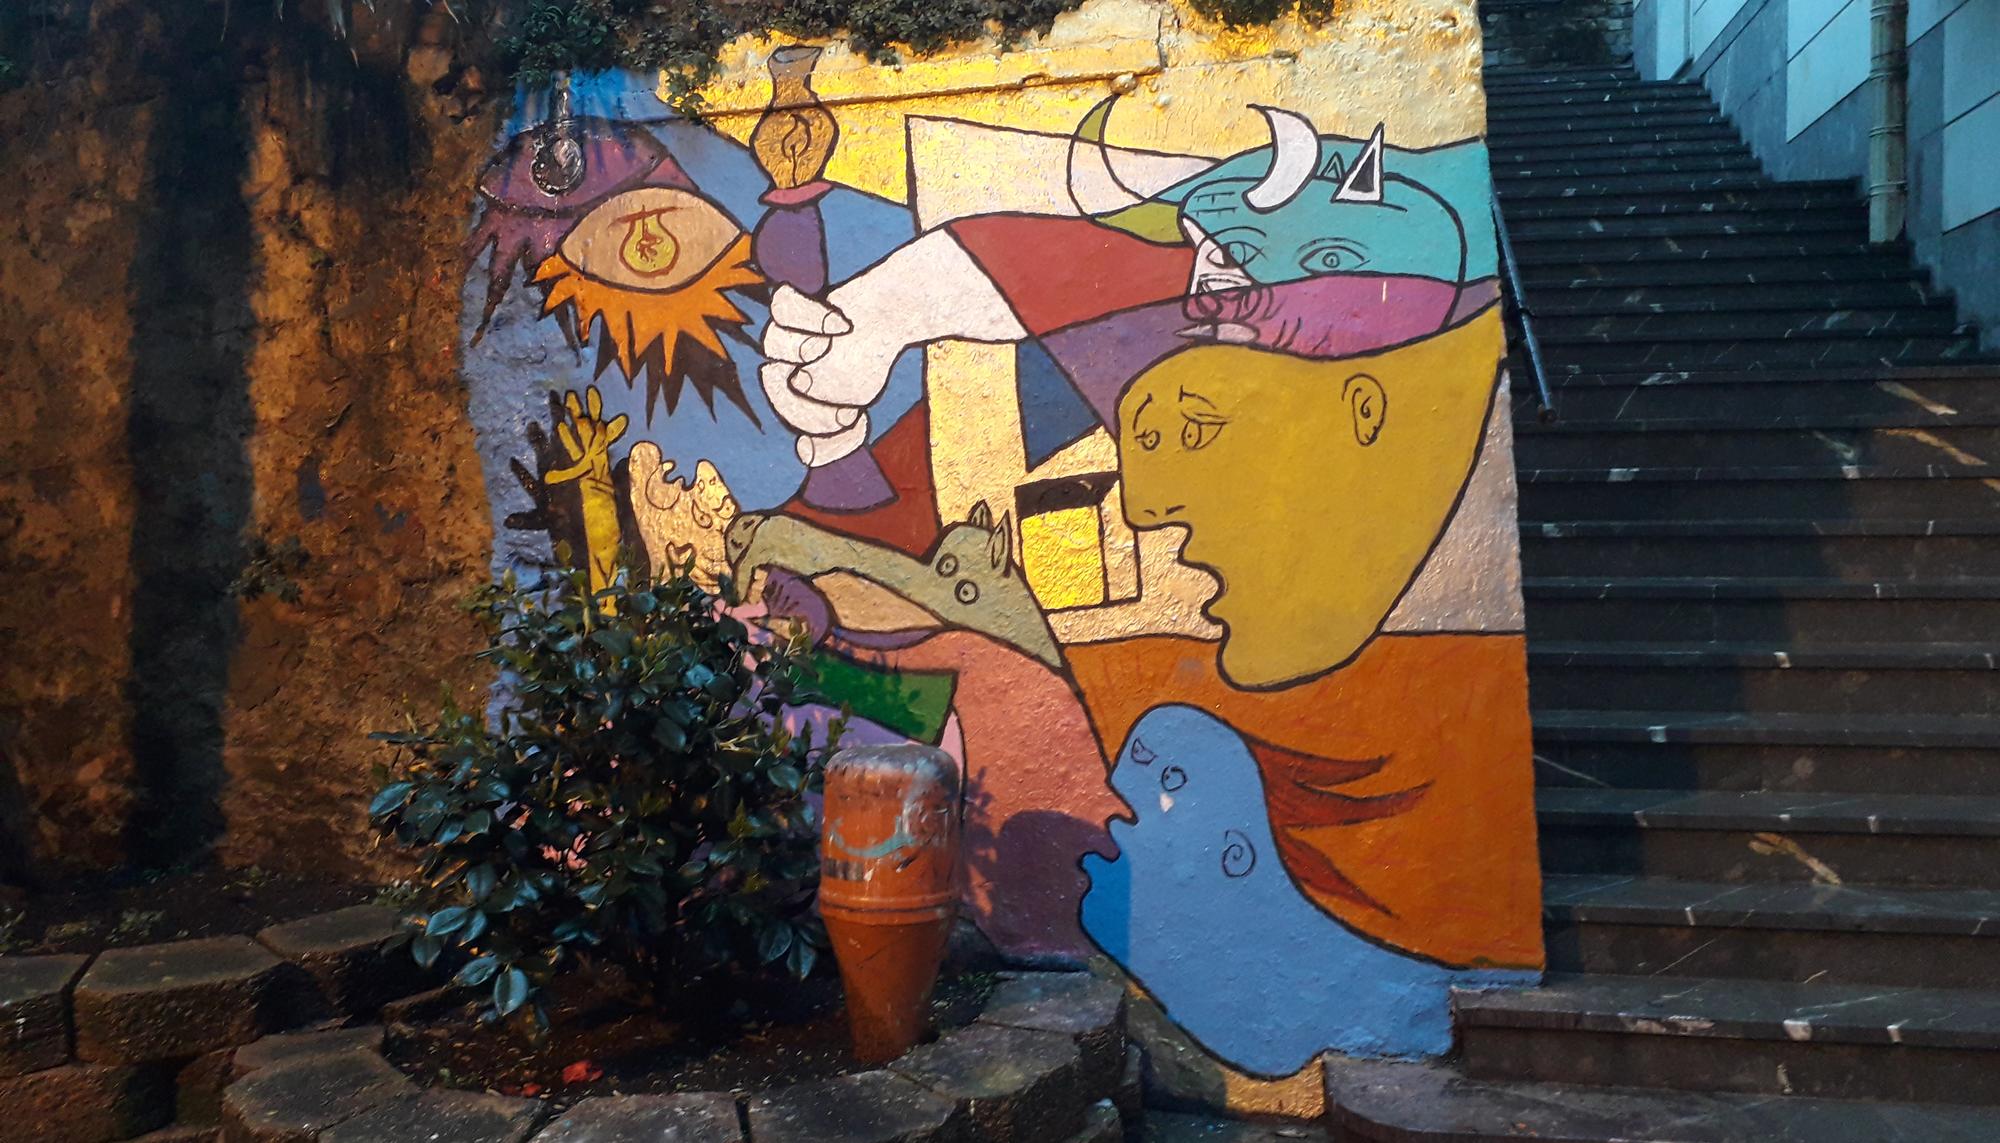 Mural 98 del colectivo Kalea Guztiona Da de Zumaia.